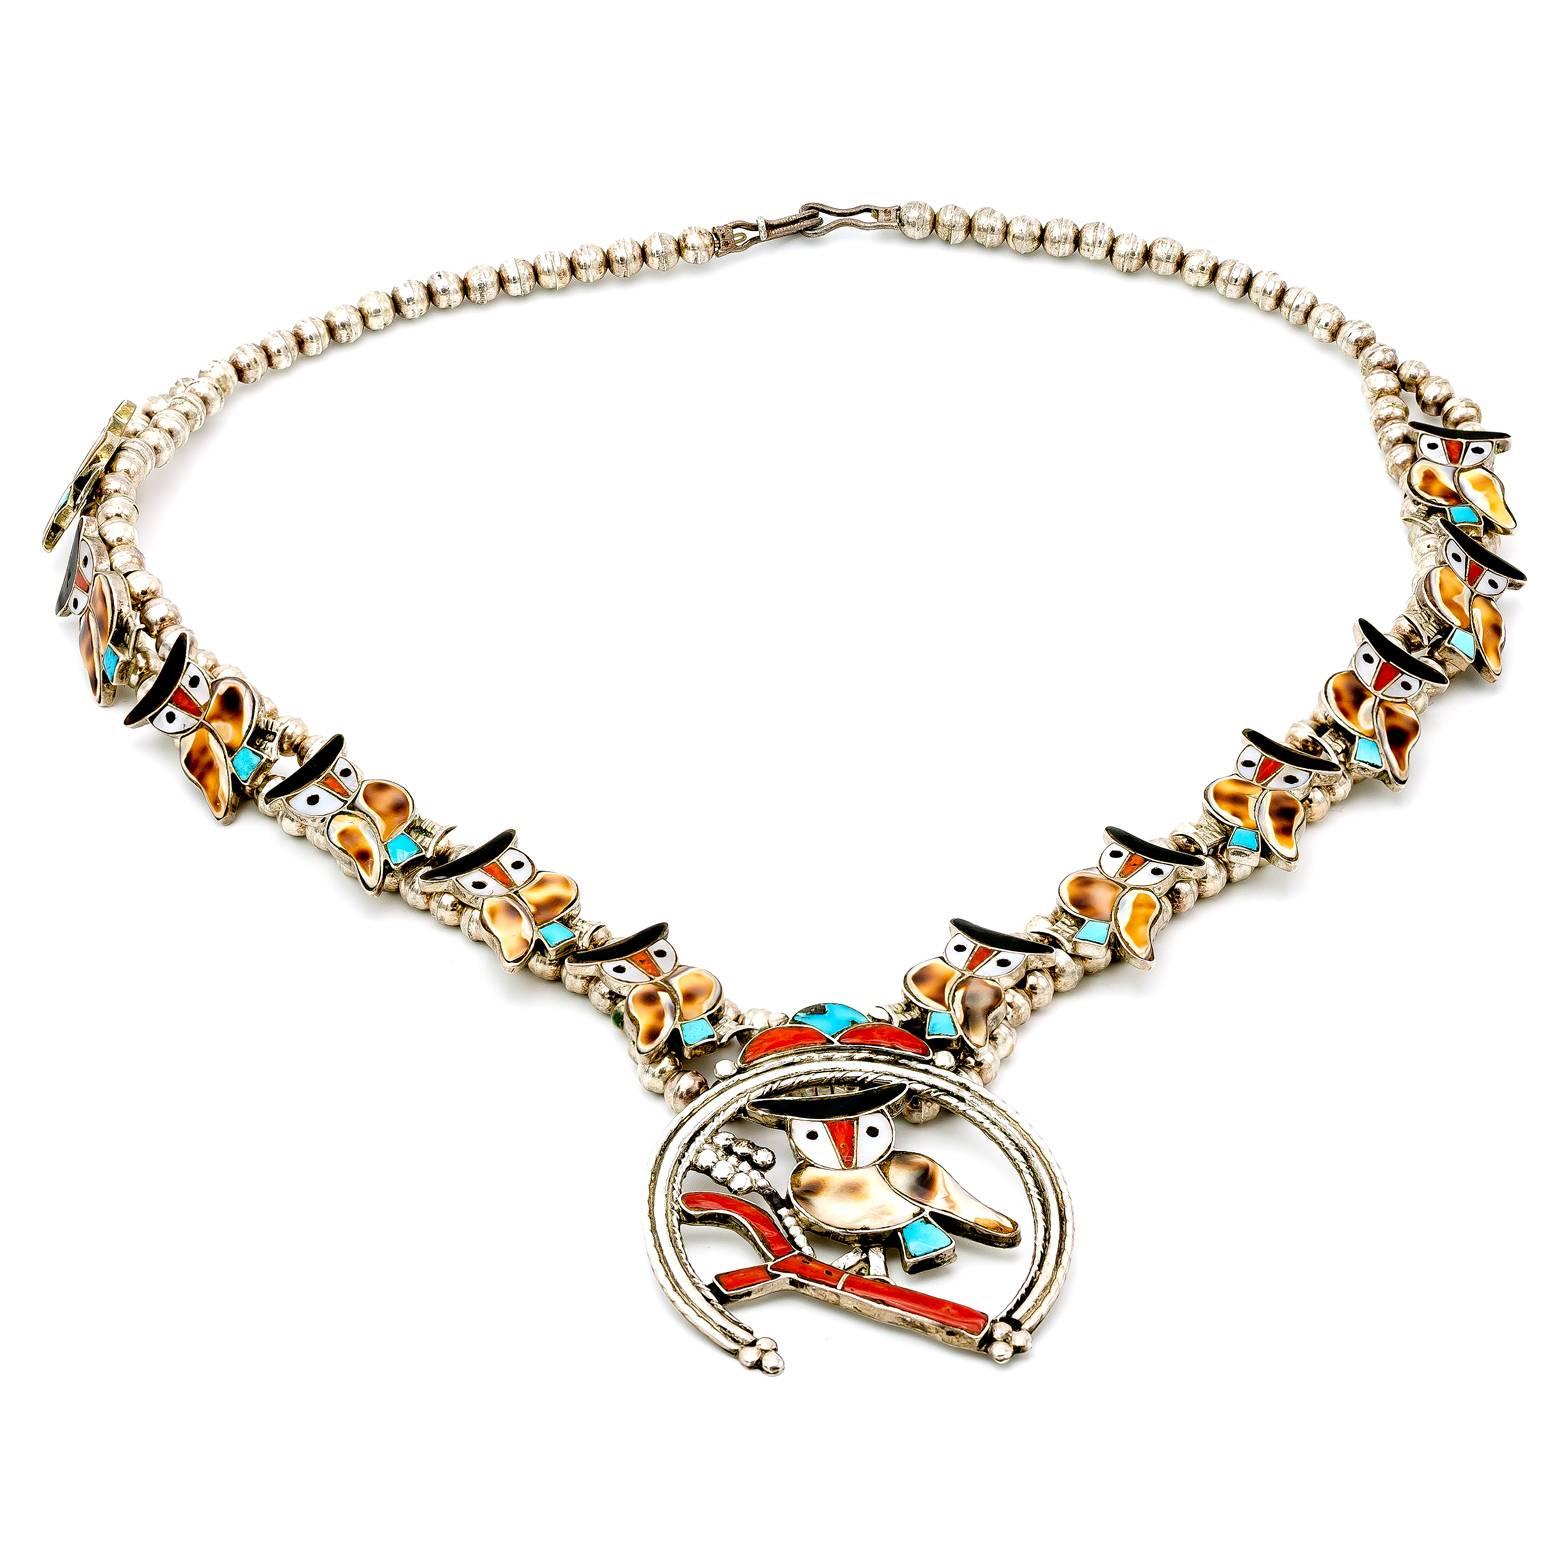 Diese handgefertigte Halskette im Stil einer Kürbisblüte ist mit Perlmutt, Türkisen, Korallen und Muscheln besetzt. Ein tolles Sammlerstück für Zuni-Schmuck und Eulenliebhaber. 